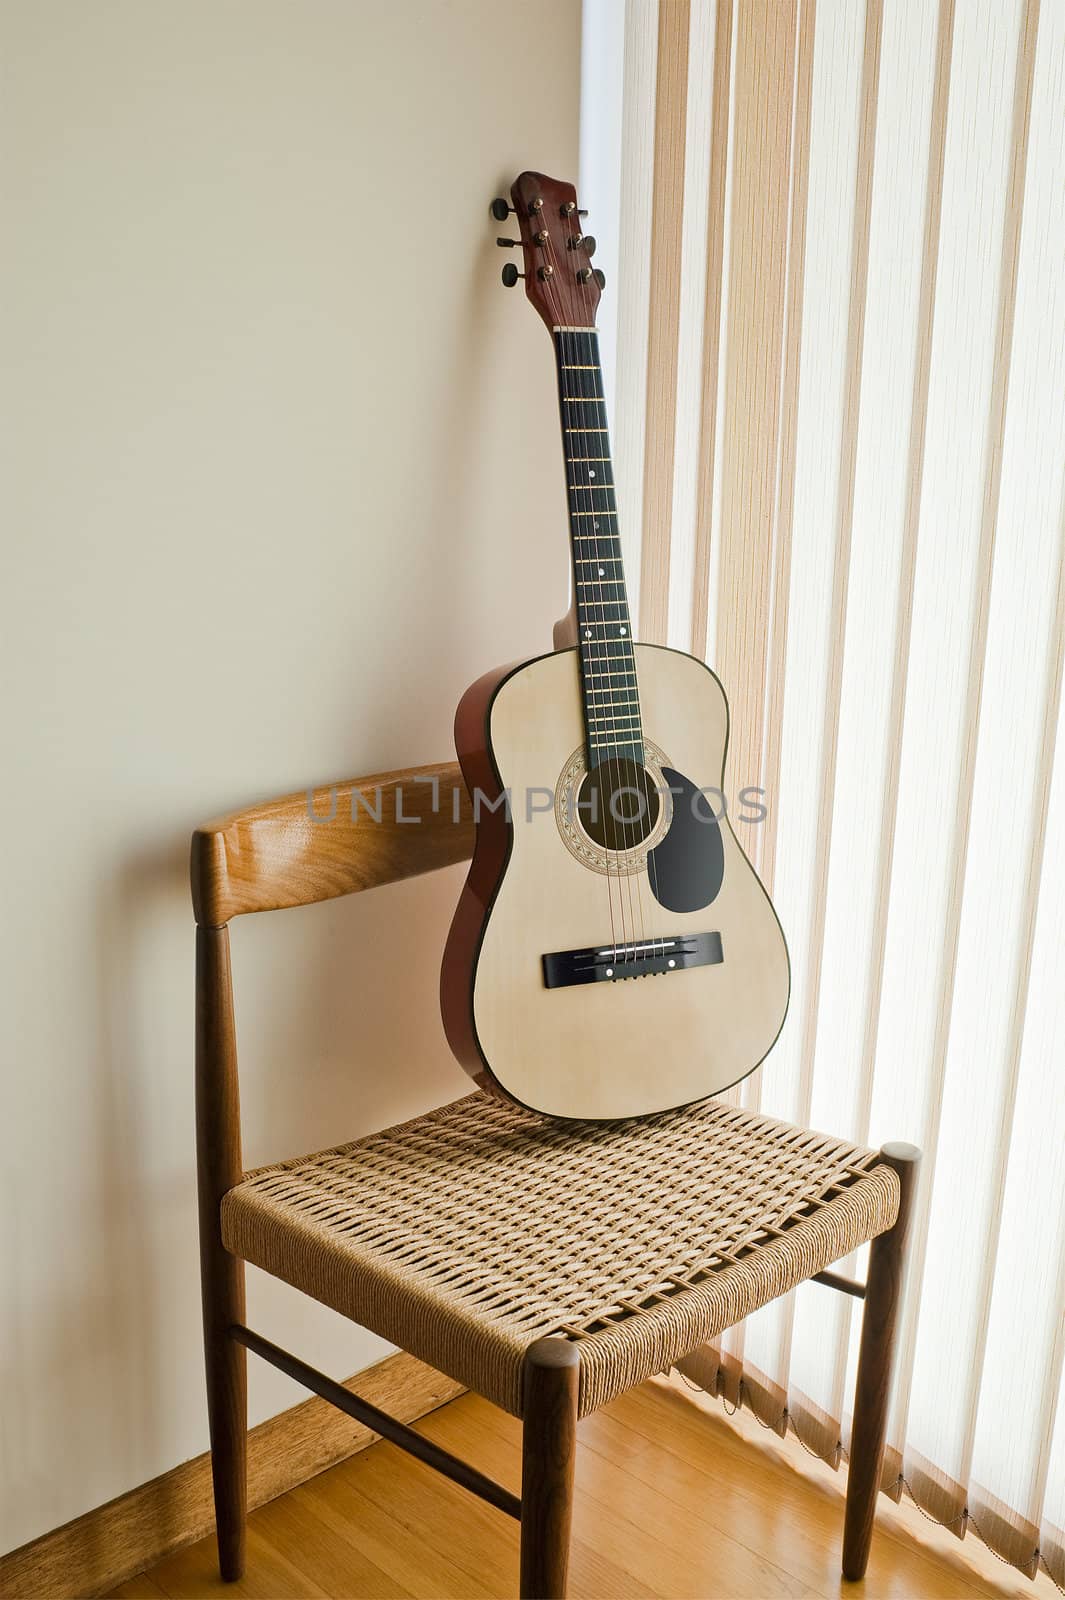 classical guitar on a modern chair